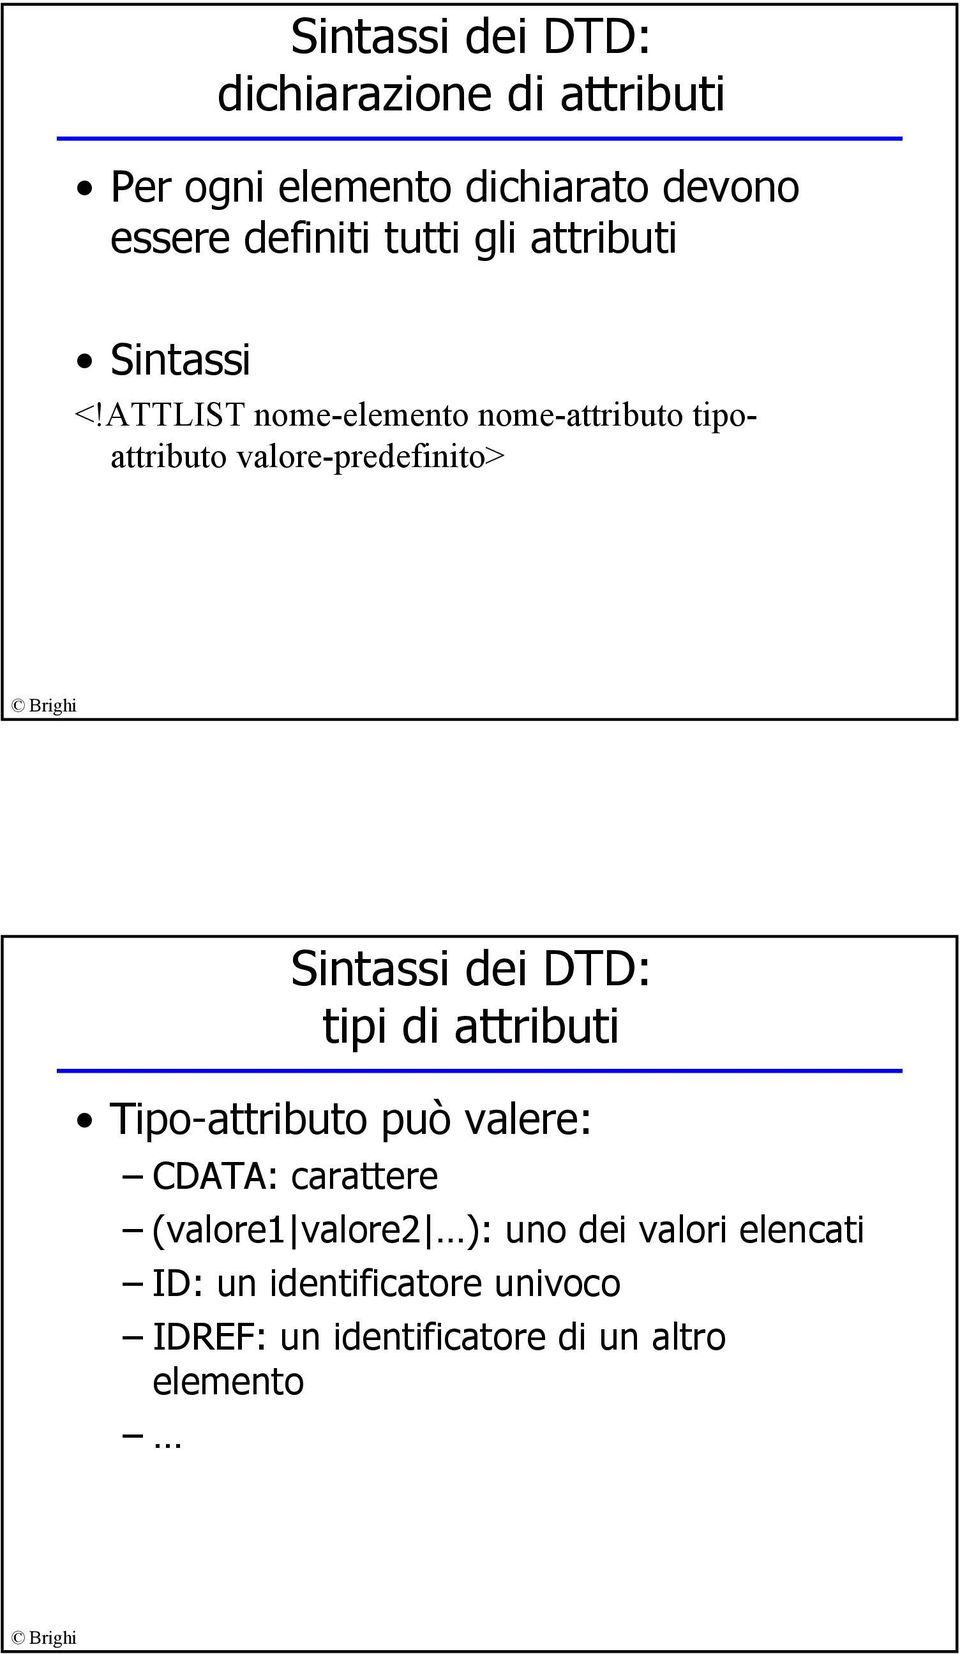 ATTLIST nome-elemento nome-attributo tipoattributo valore-predefinito> Sintassi dei DTD: tipi di